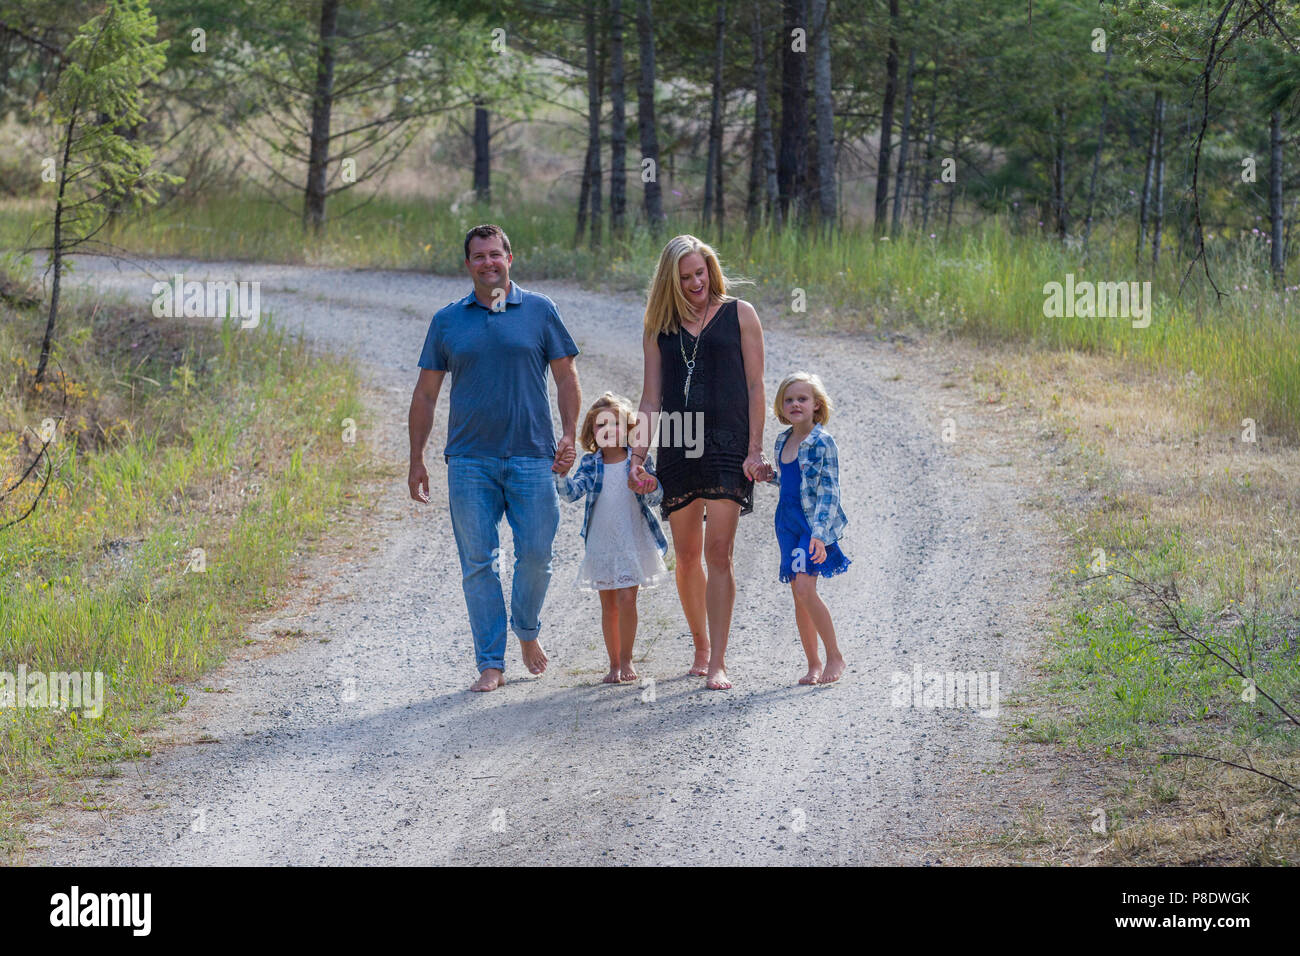 Attraktiver Mann und Frau, mit ihren 4 und 6 Jahre alten Töchter, wandern nach unten ein Land Feldweg, halten sich an den Händen, barfuß. Model Released - Vati Nr. 116, Gi Stockfoto